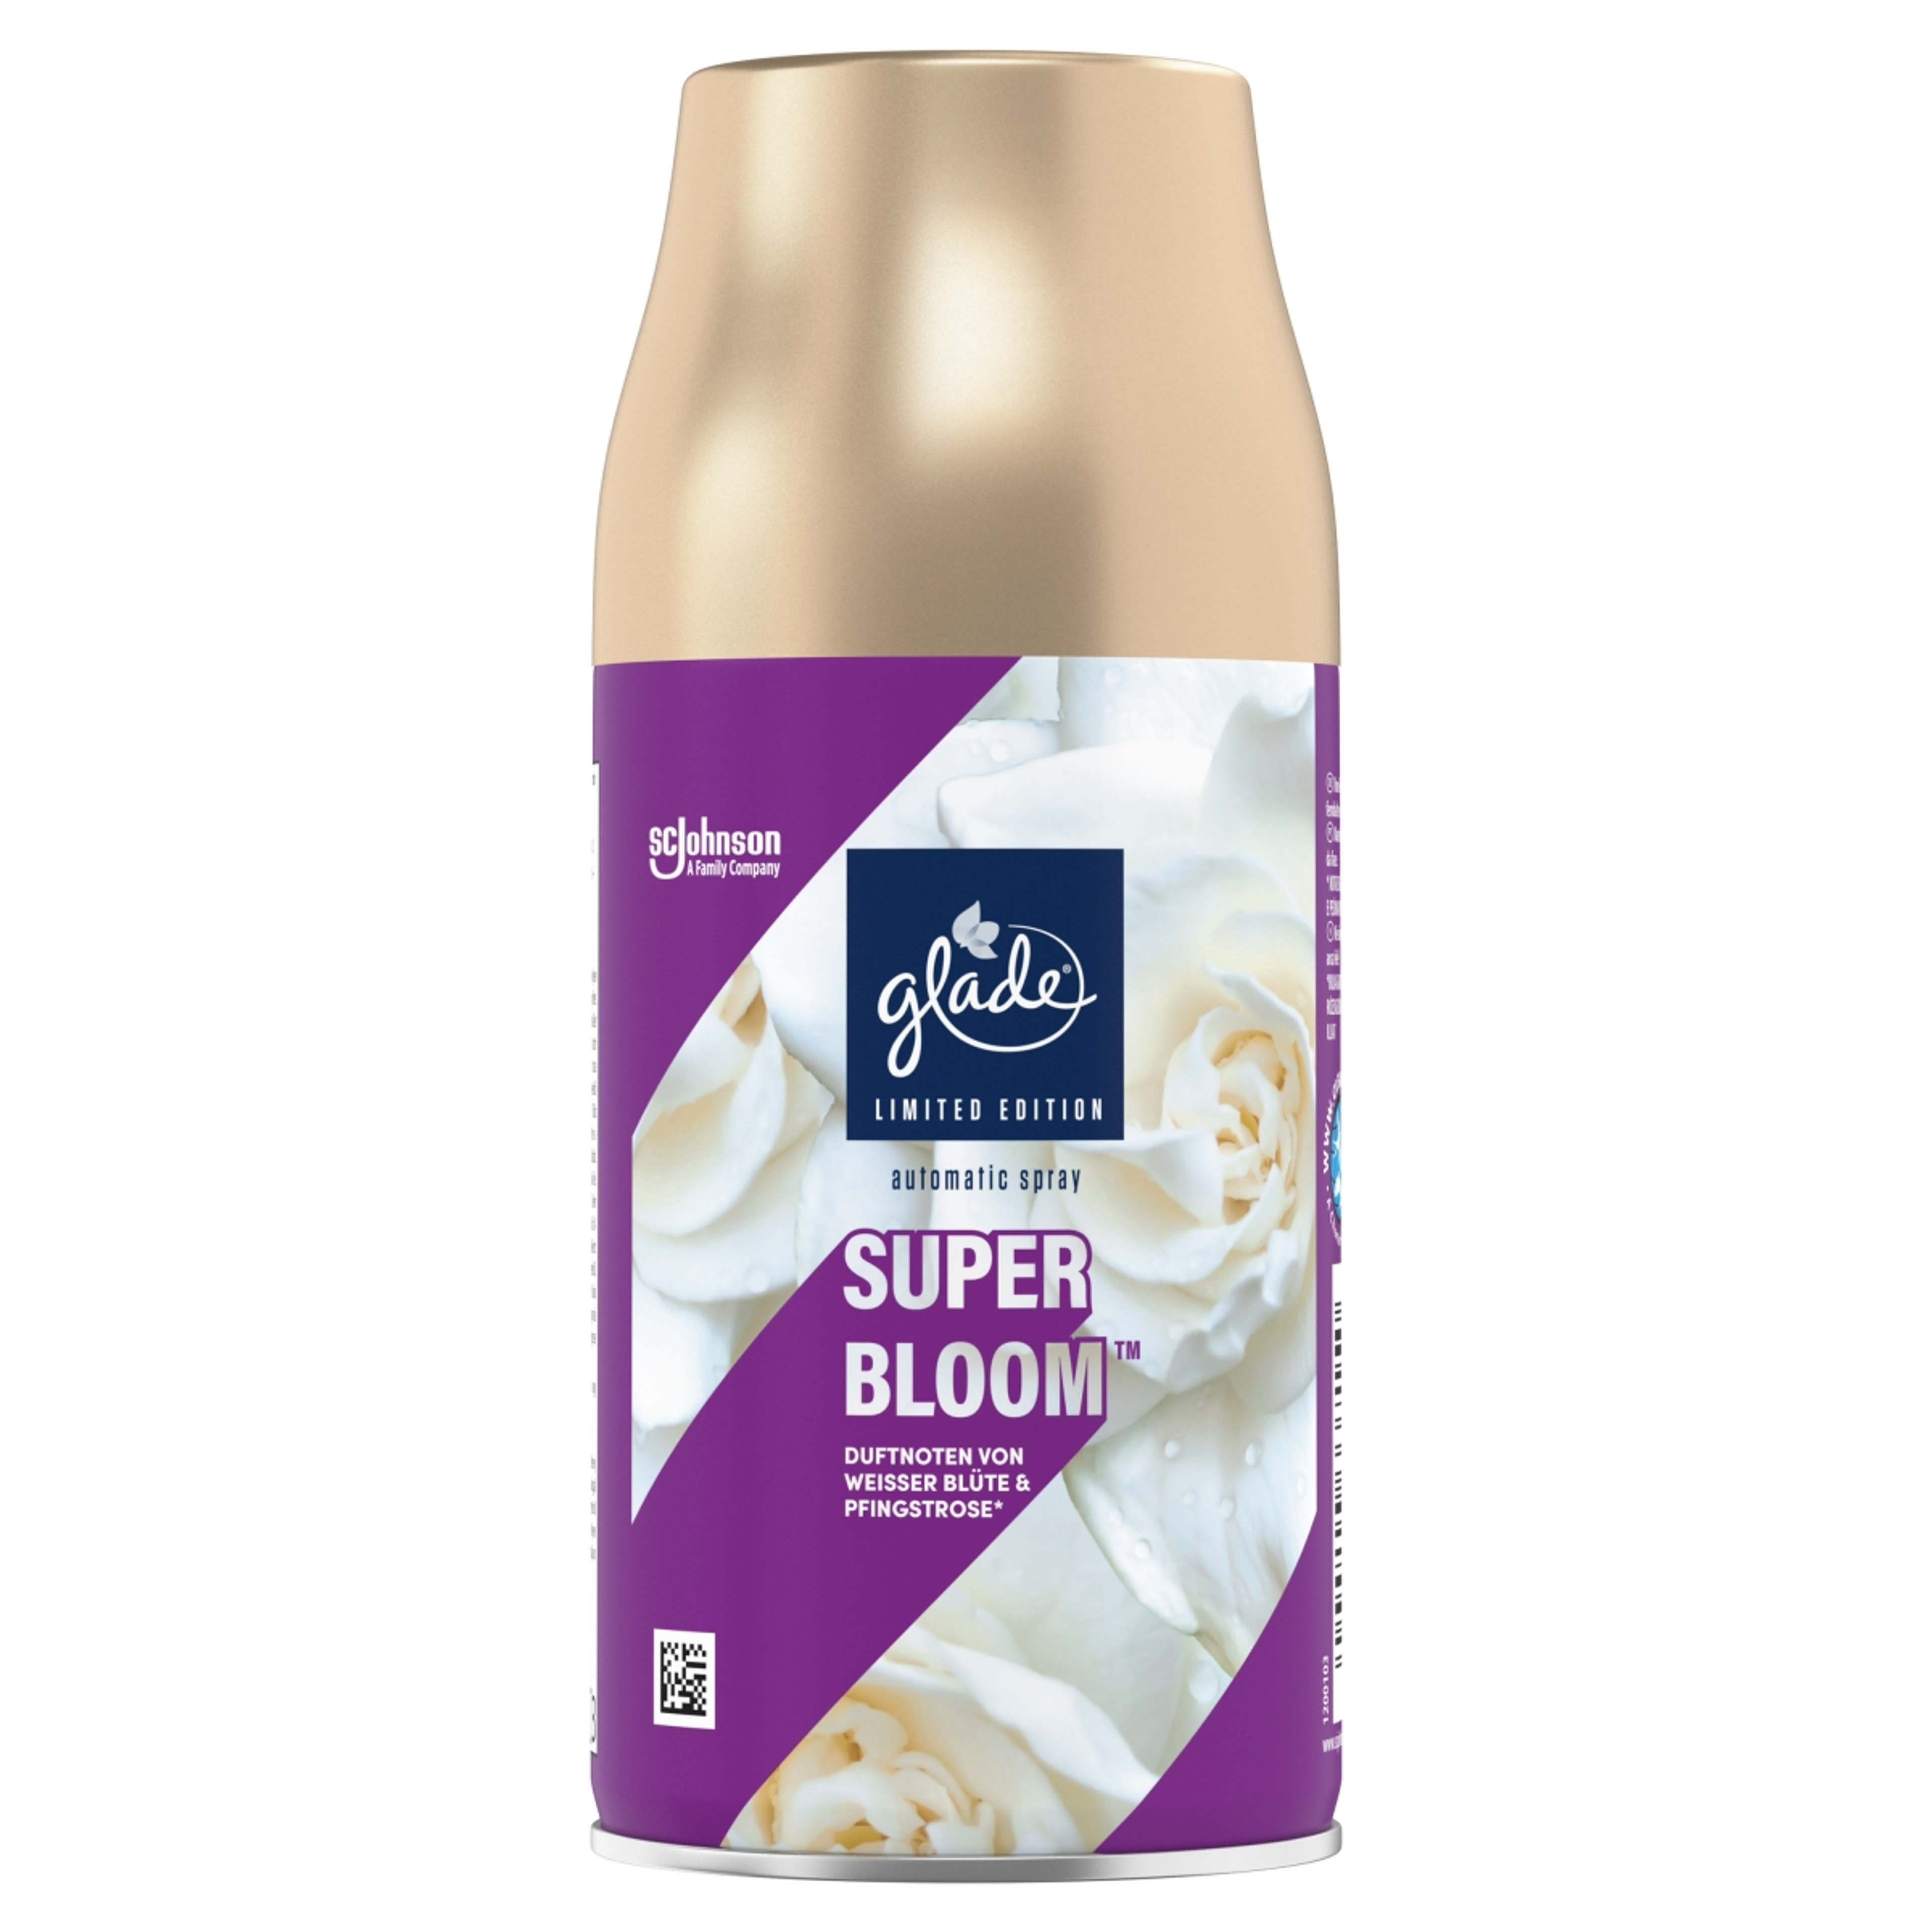 Glade Super Bloom automata légfrissítő utántöltő - 269 ml-2